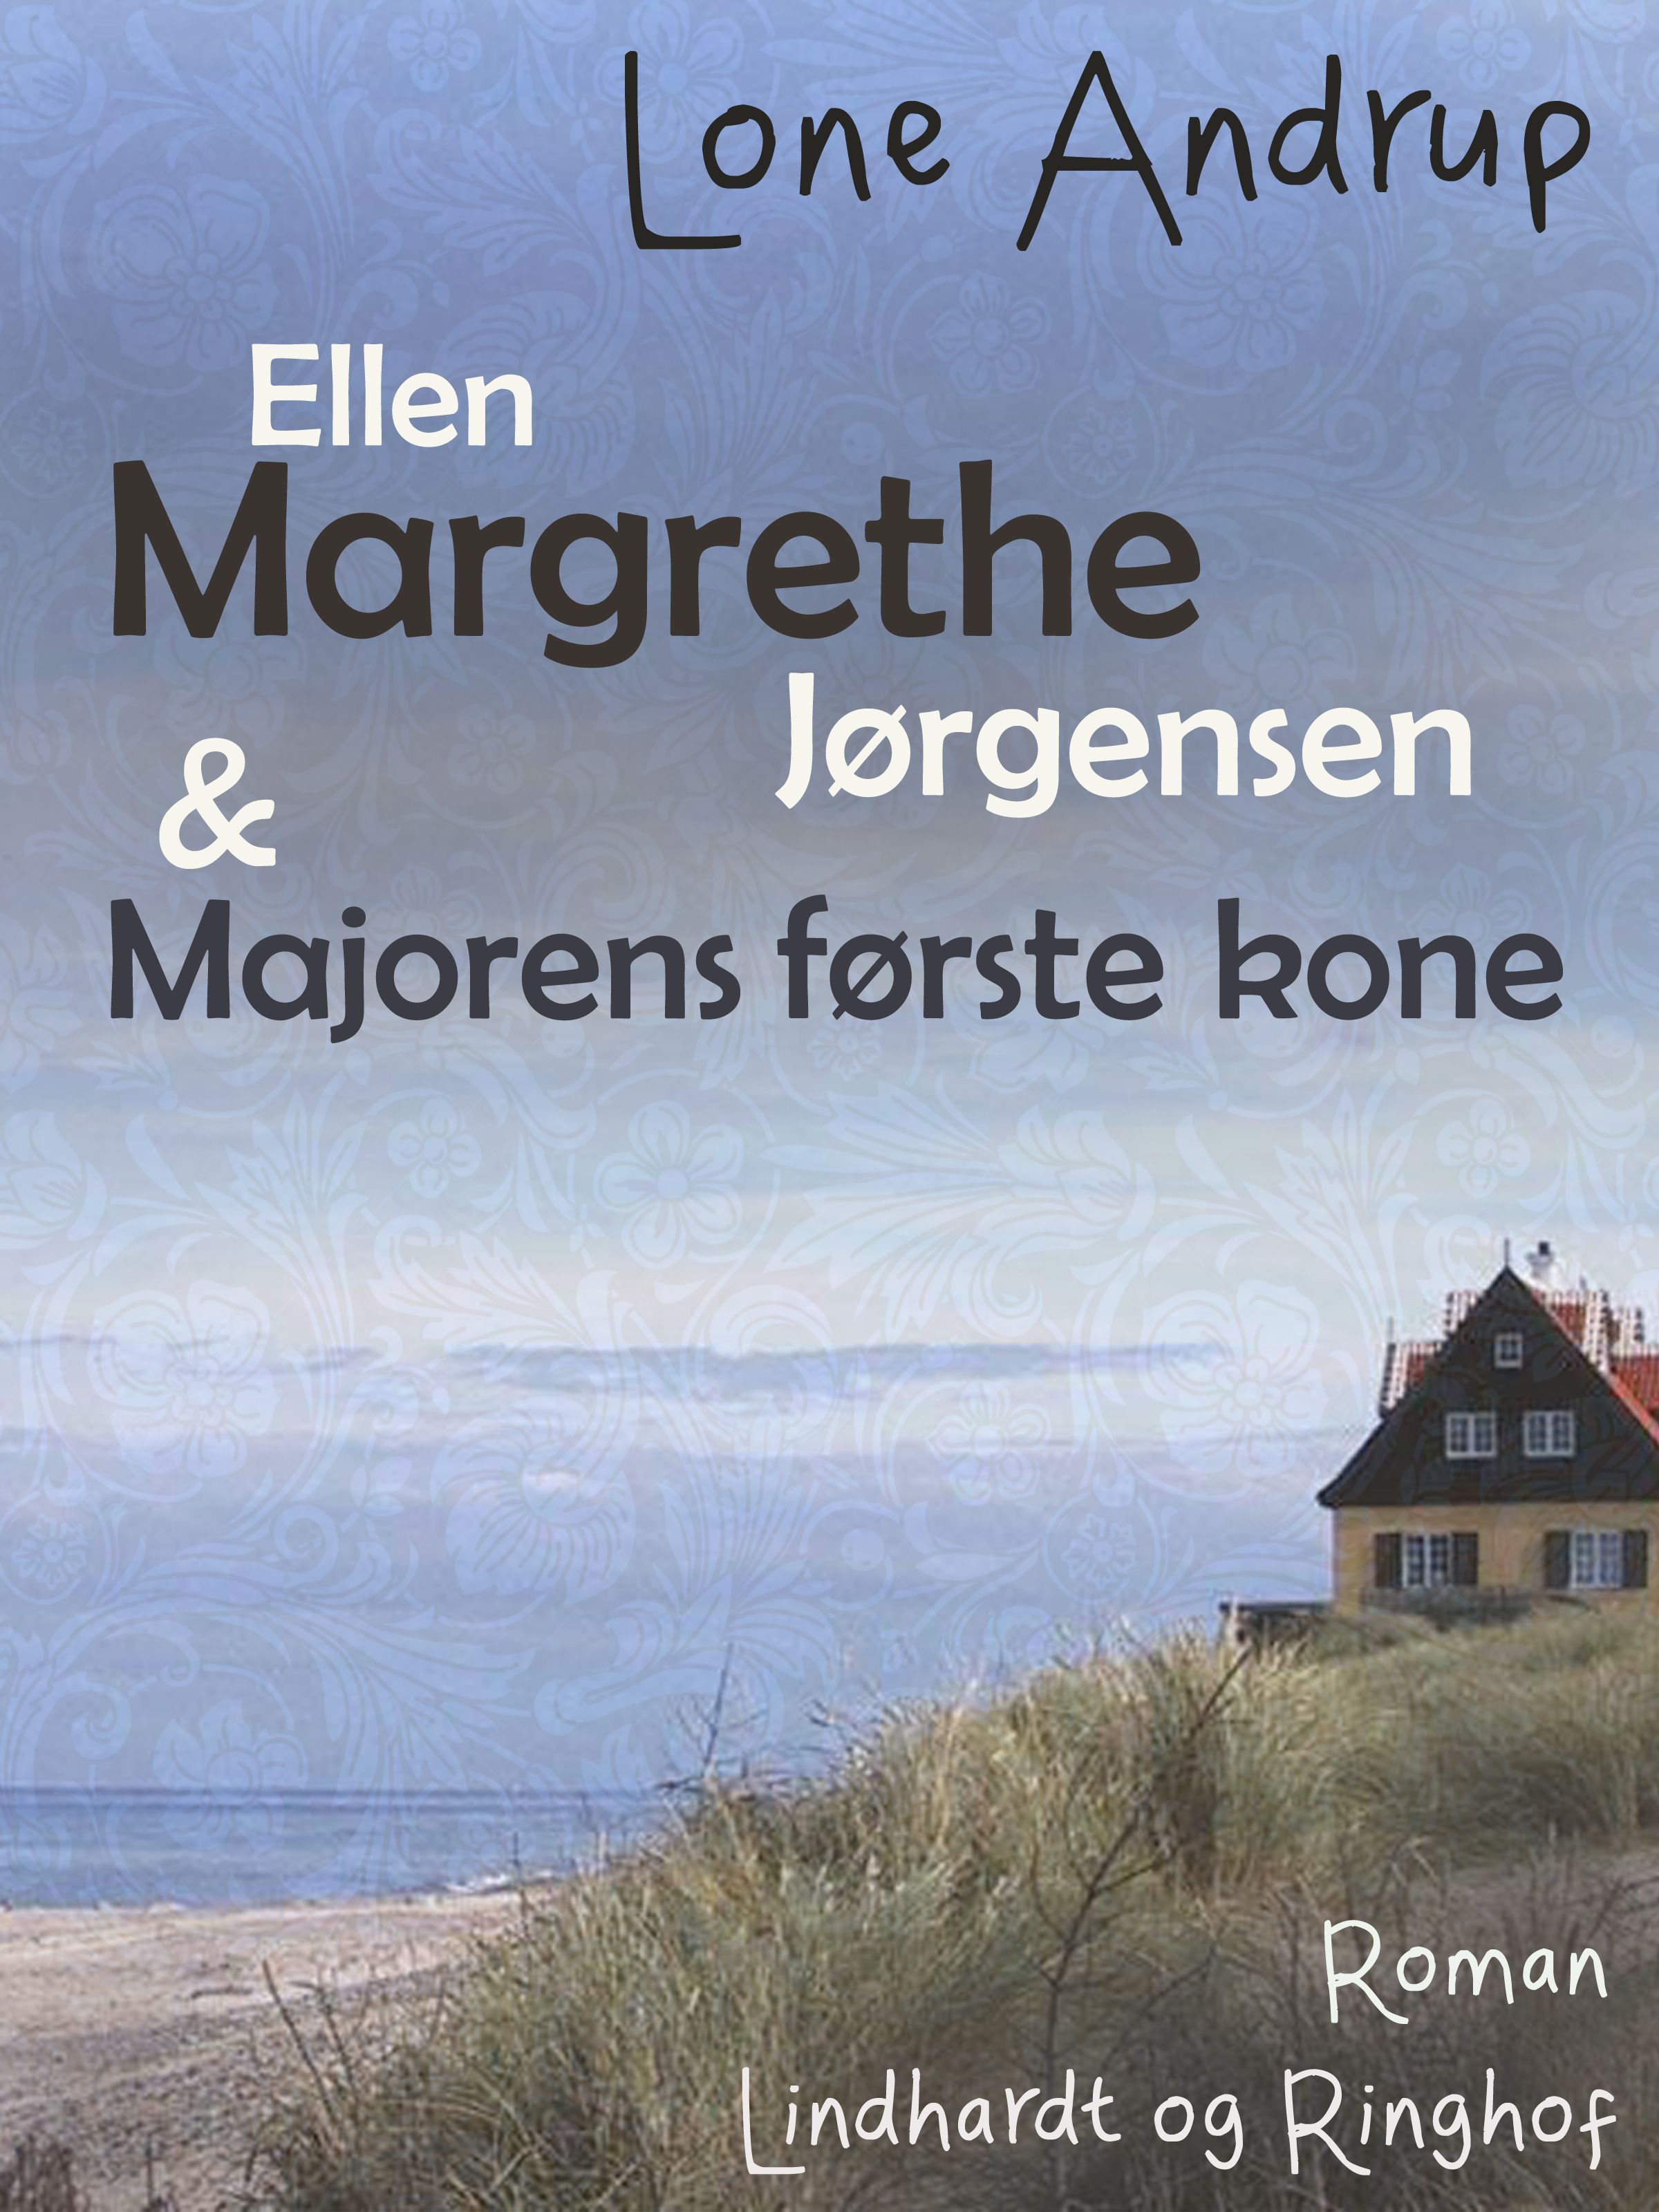 Ellen Margrethe Jørgensen & Majorens første kone, ljudbok av Lone Andrup